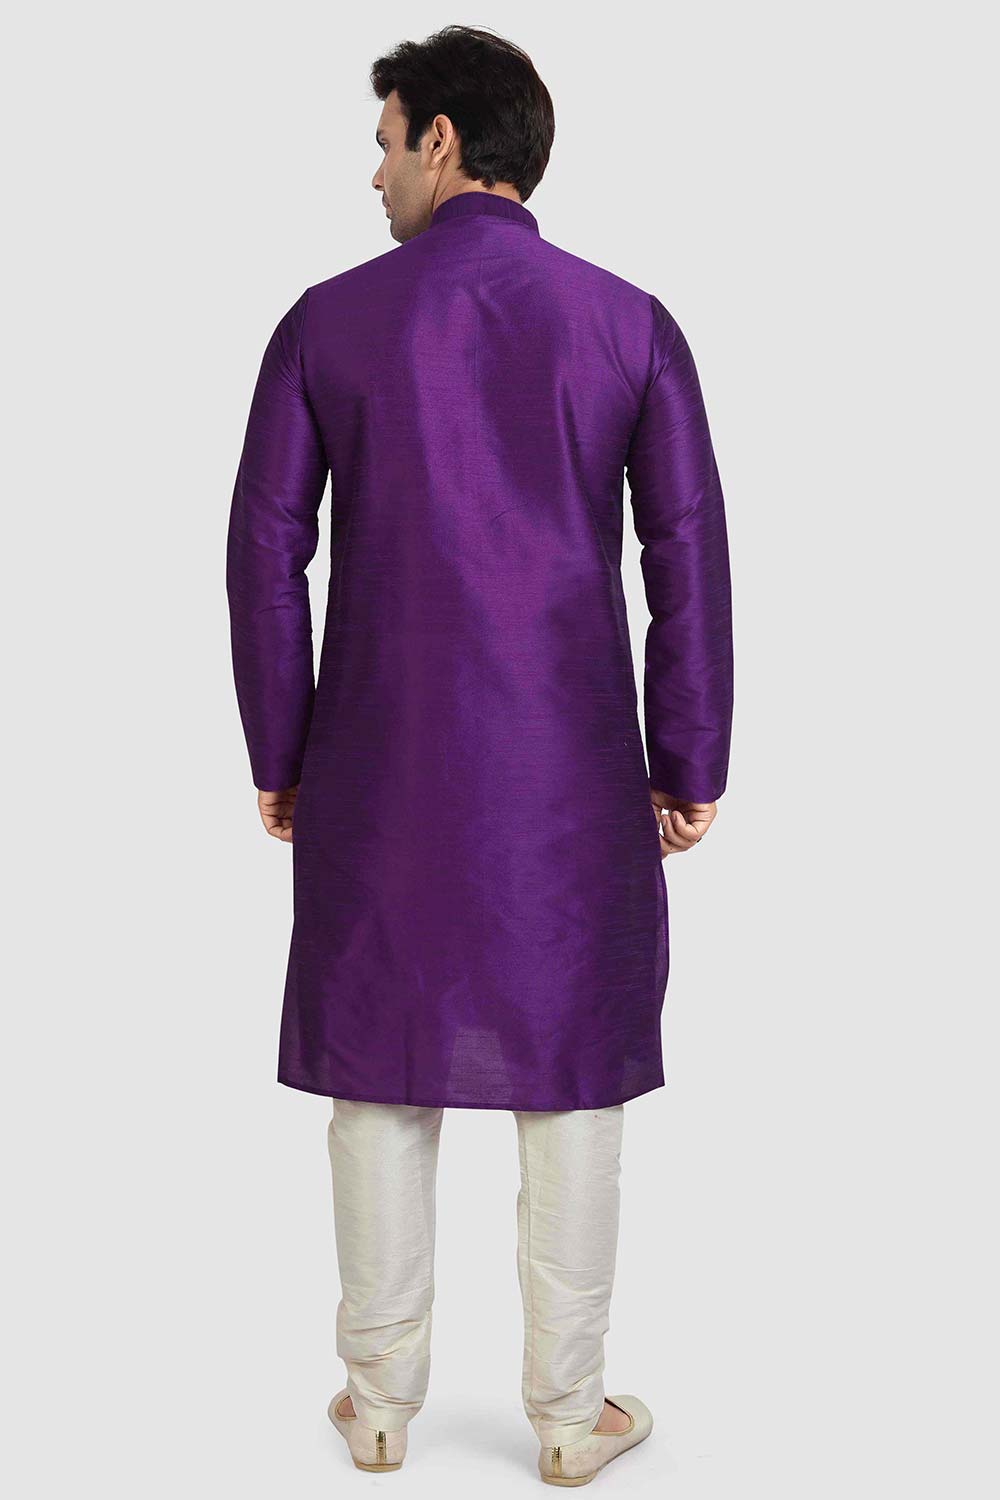 Buy Purple Art Dupion Silk Plain Kurta Pajama Online - Karmaplace